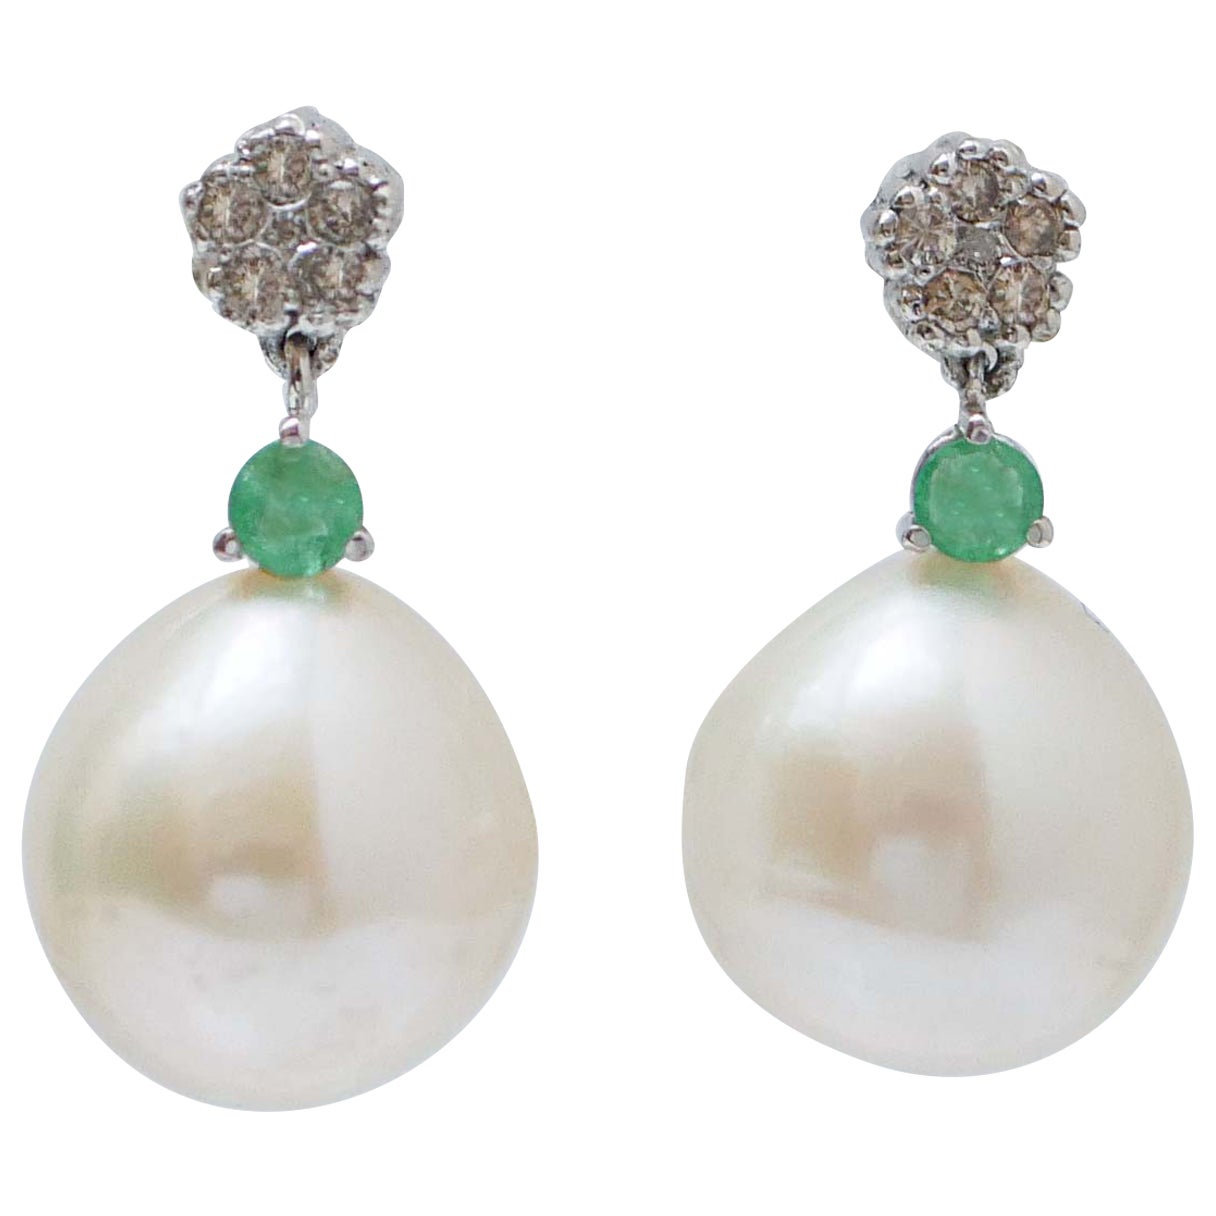 White Pearls, Emeralds, Diamonds, 14 Kt White Gold Earrings.